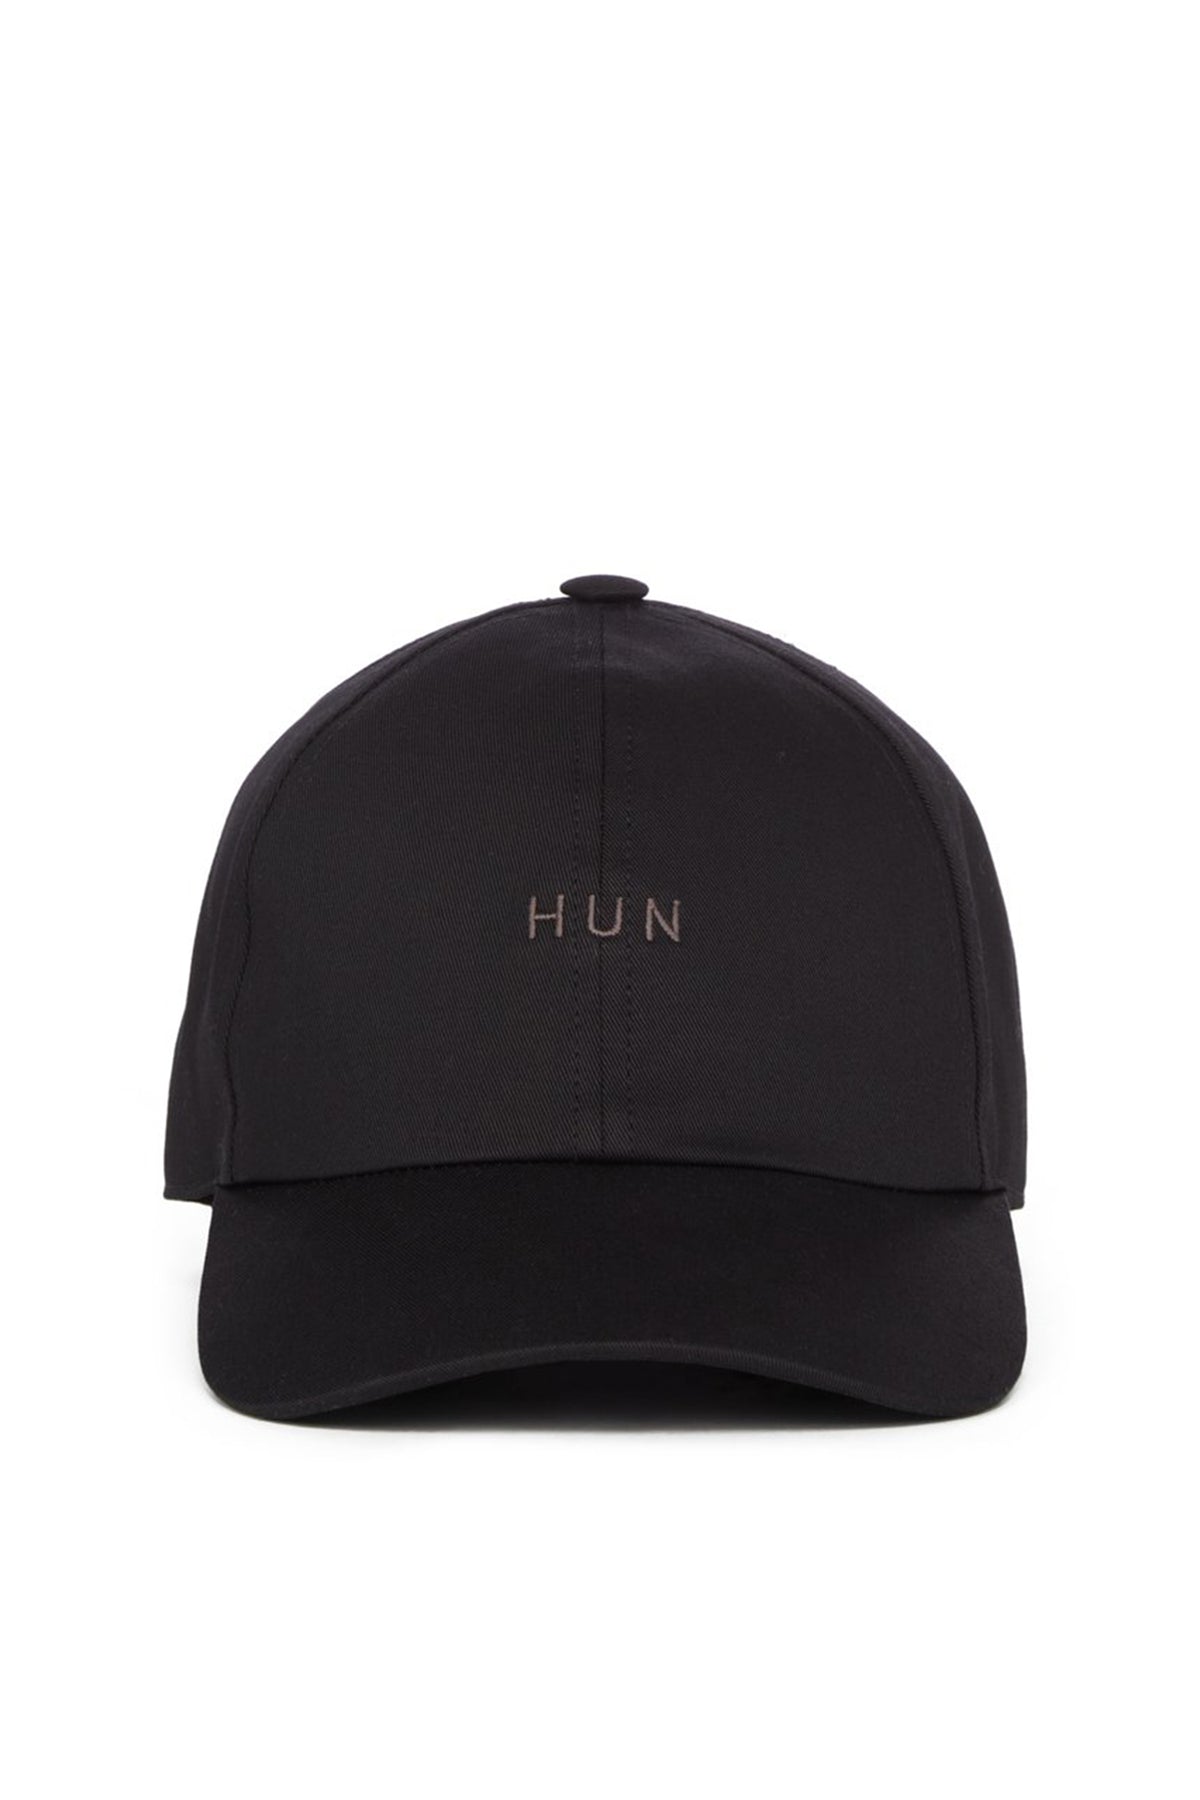 BASEBALL CAP -HUN- / BLK